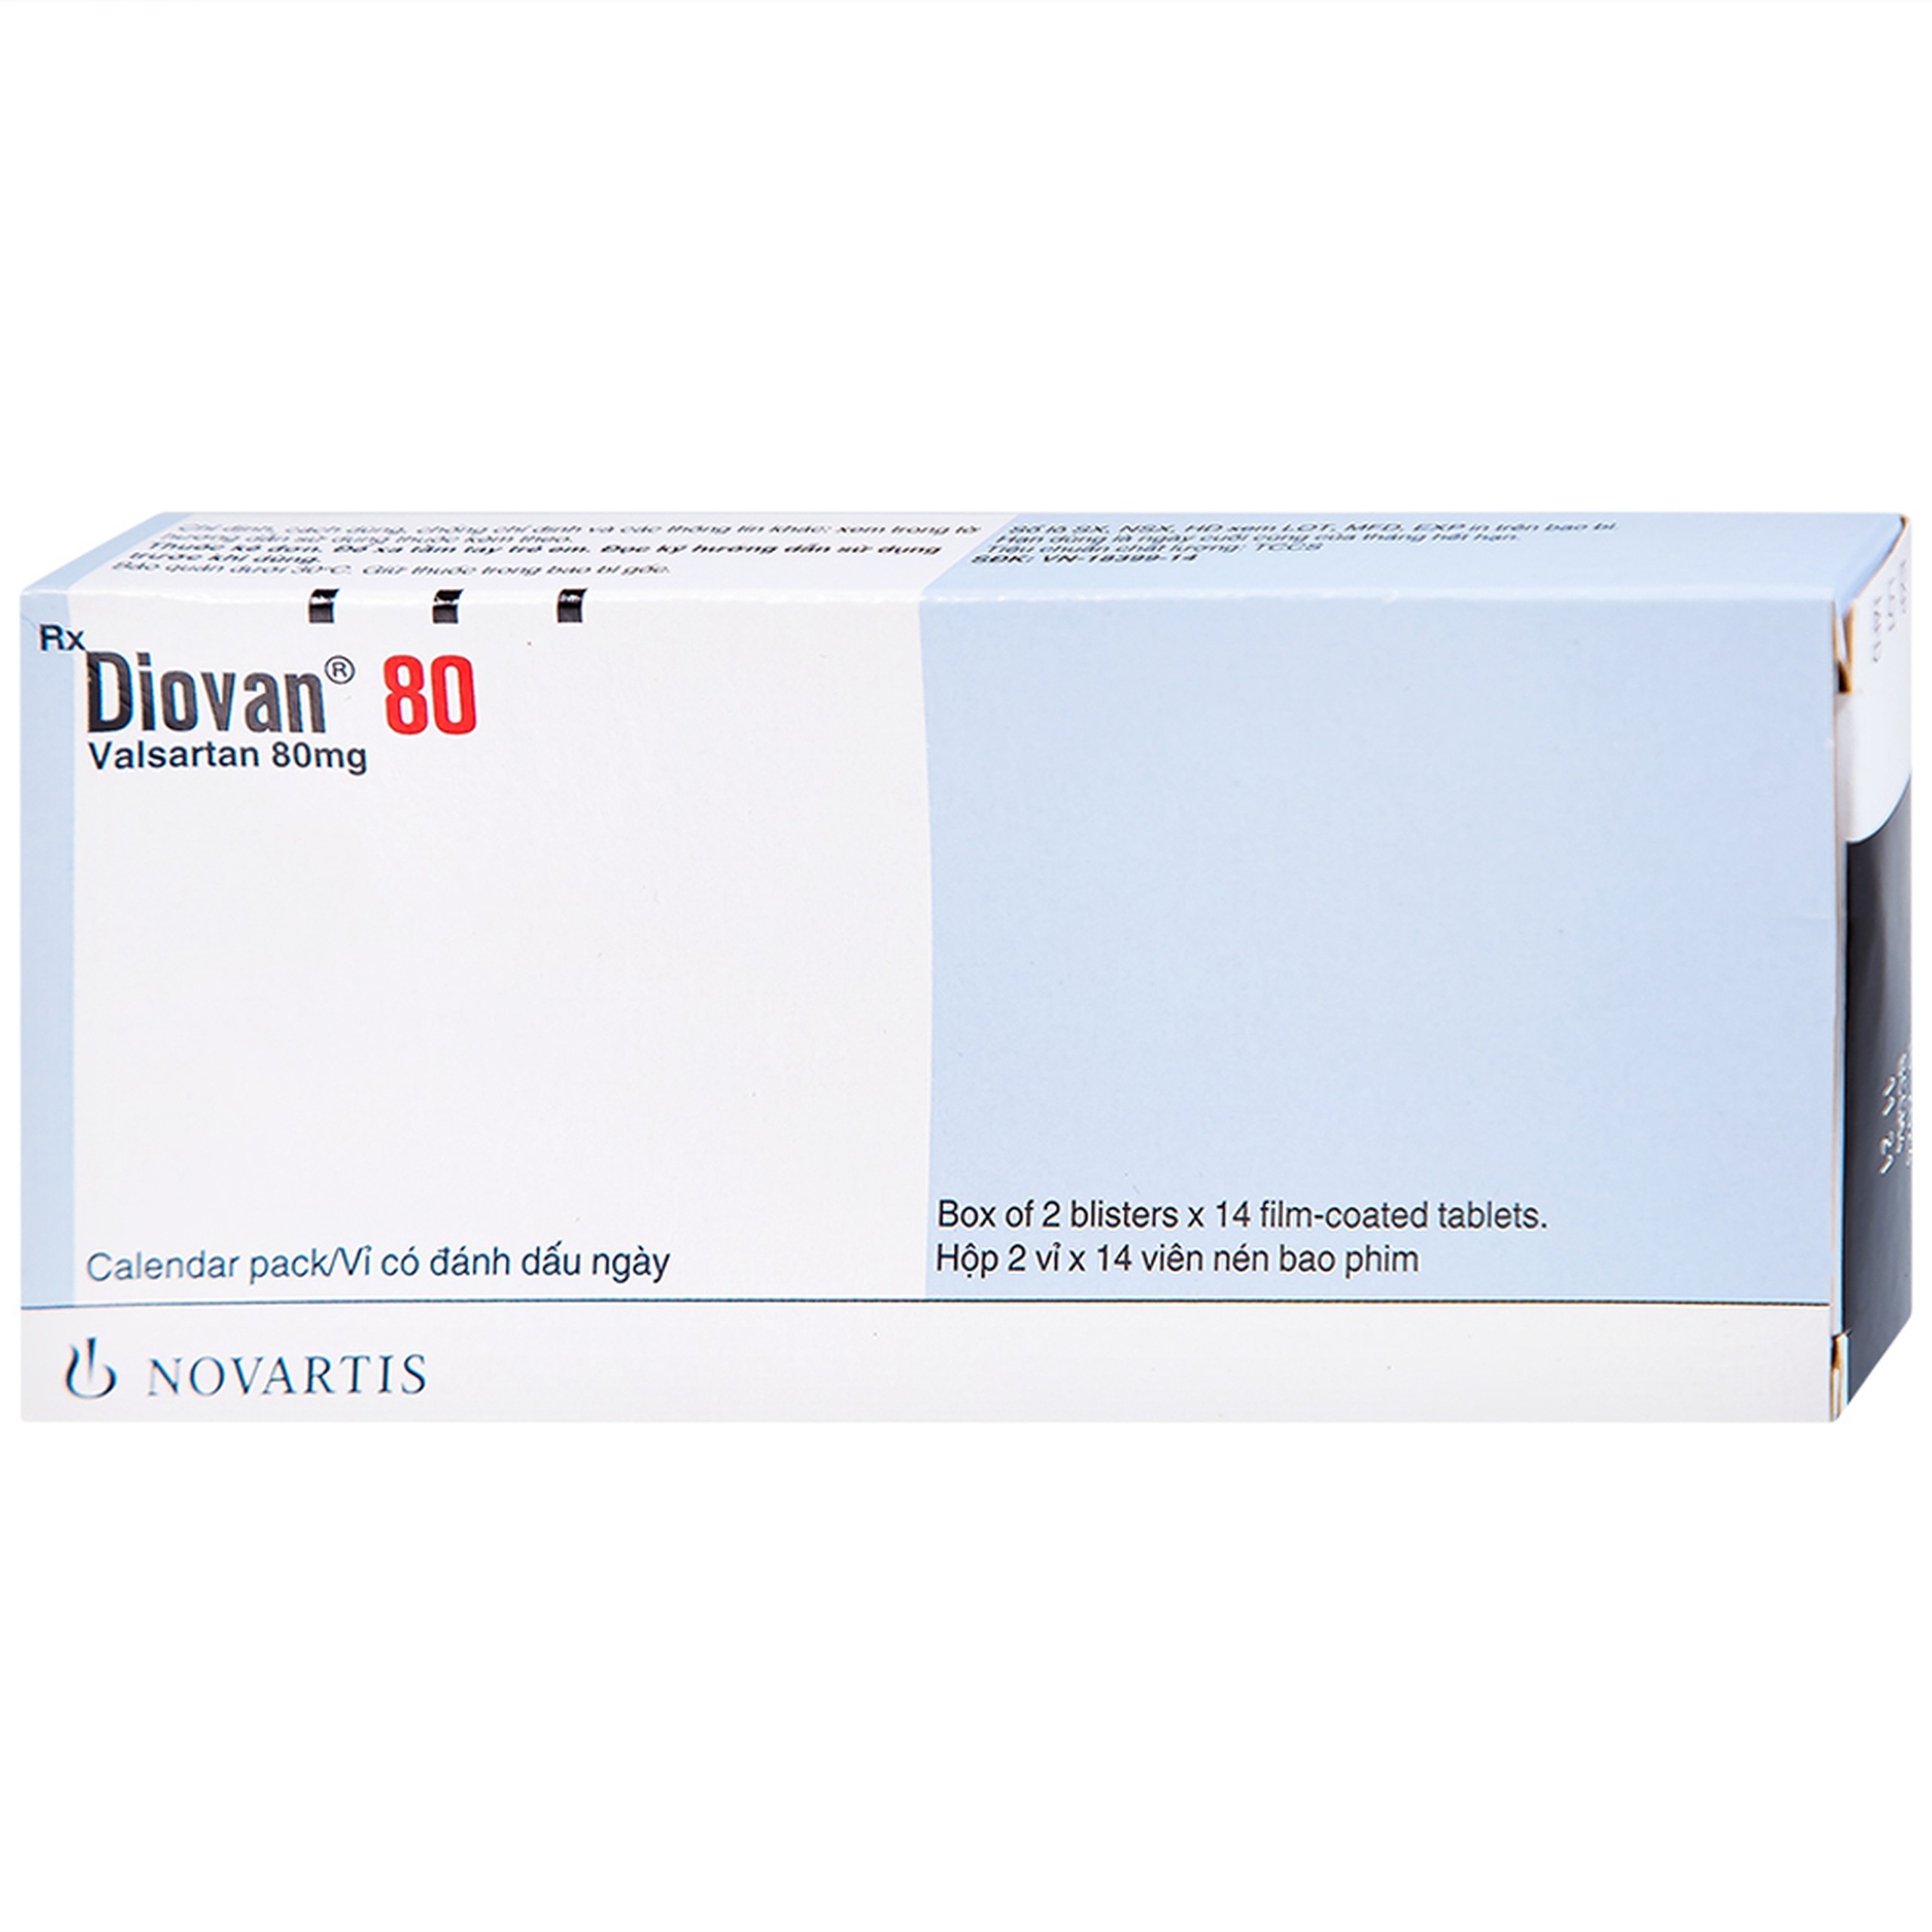 Thuốc Diovan 80 Novartis điều trị bệnh tăng huyết áp, suy tim (2 vỉ x 14 viên)